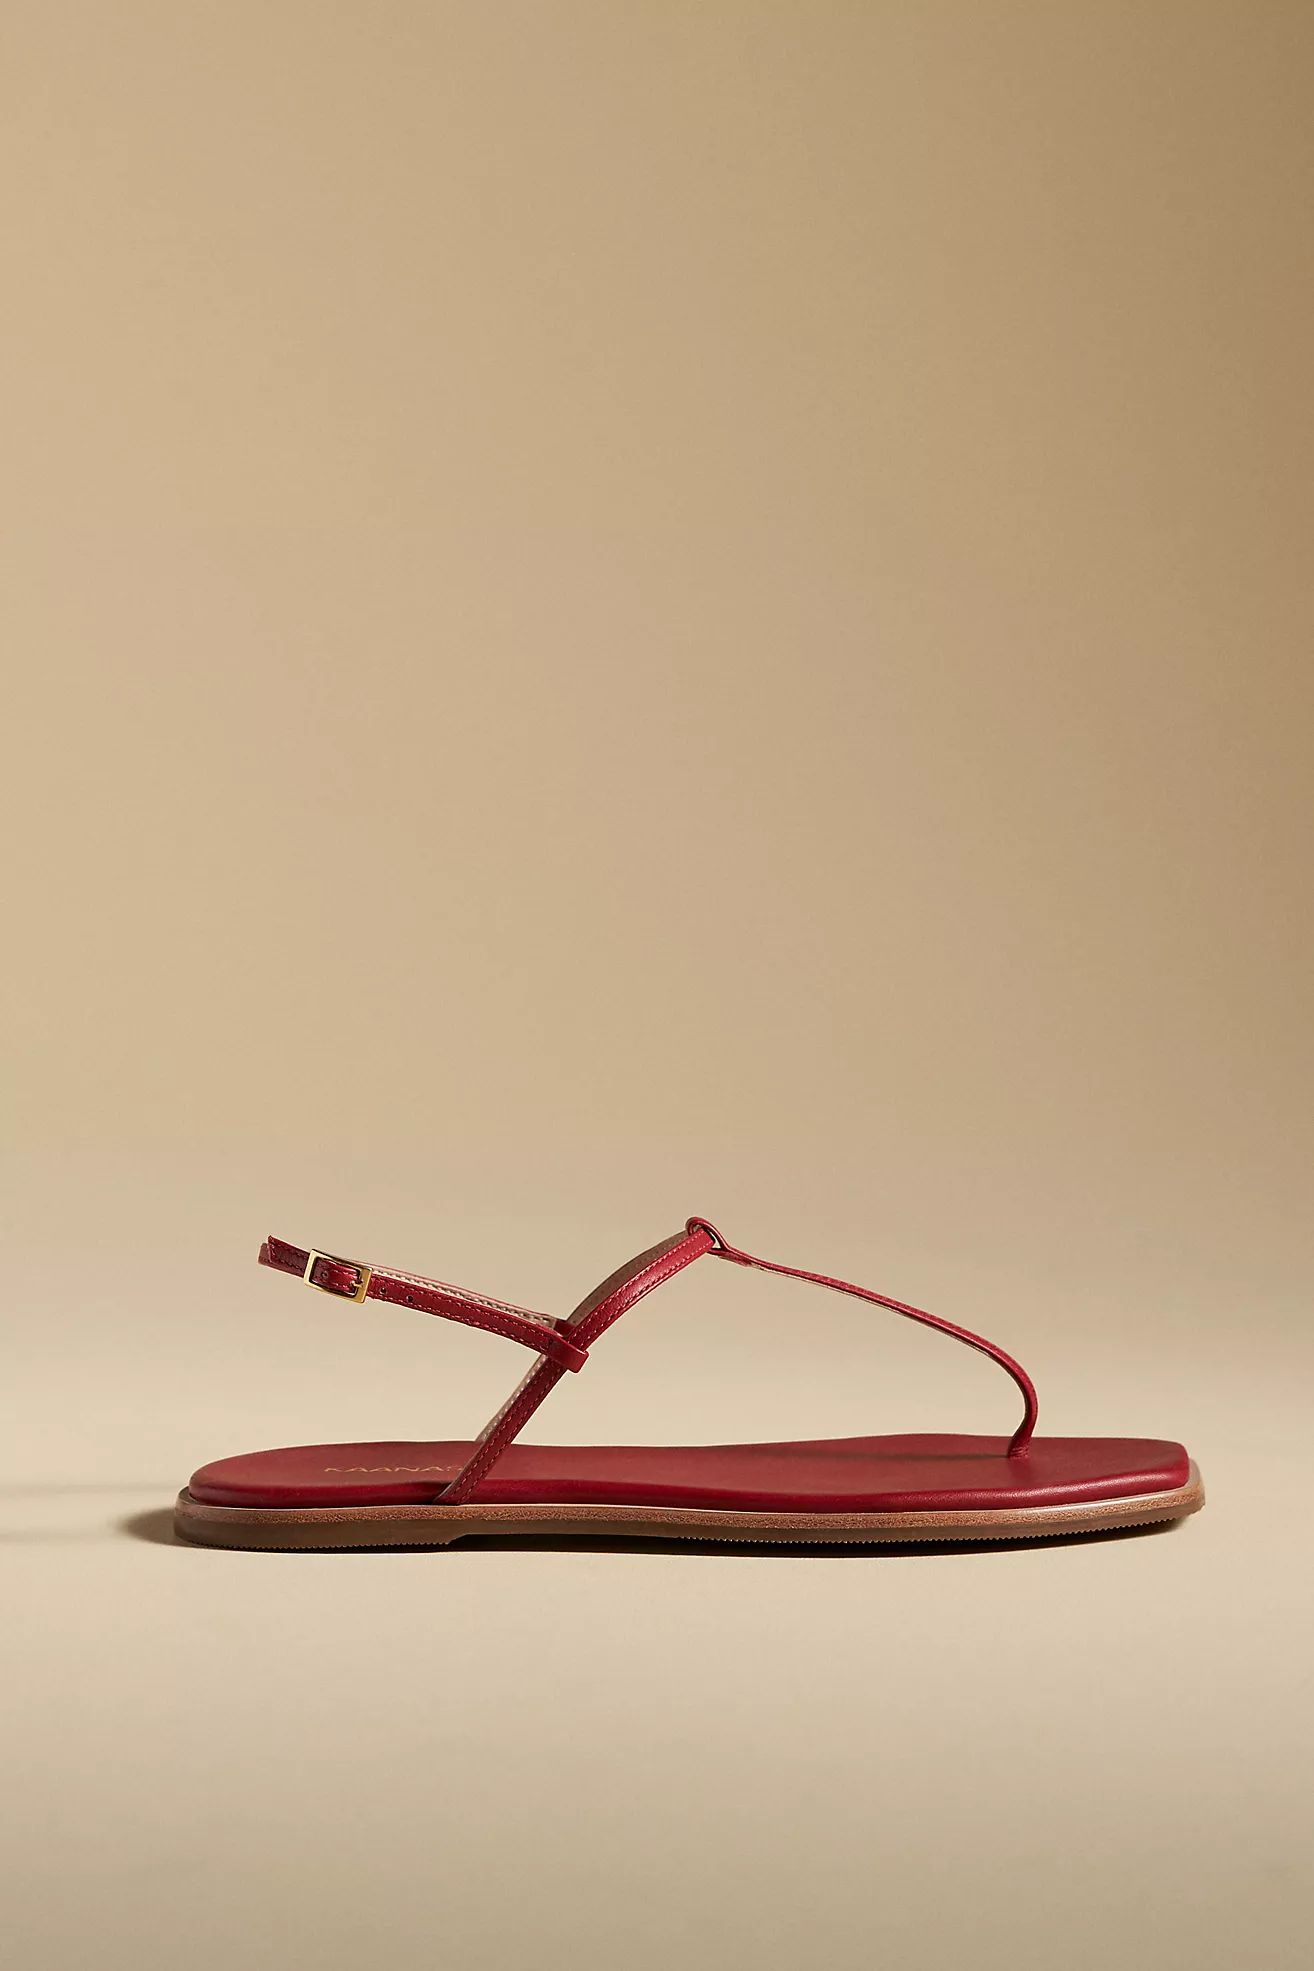 Kaanas Clarkia Naked Thong Sandals | Anthropologie (US)